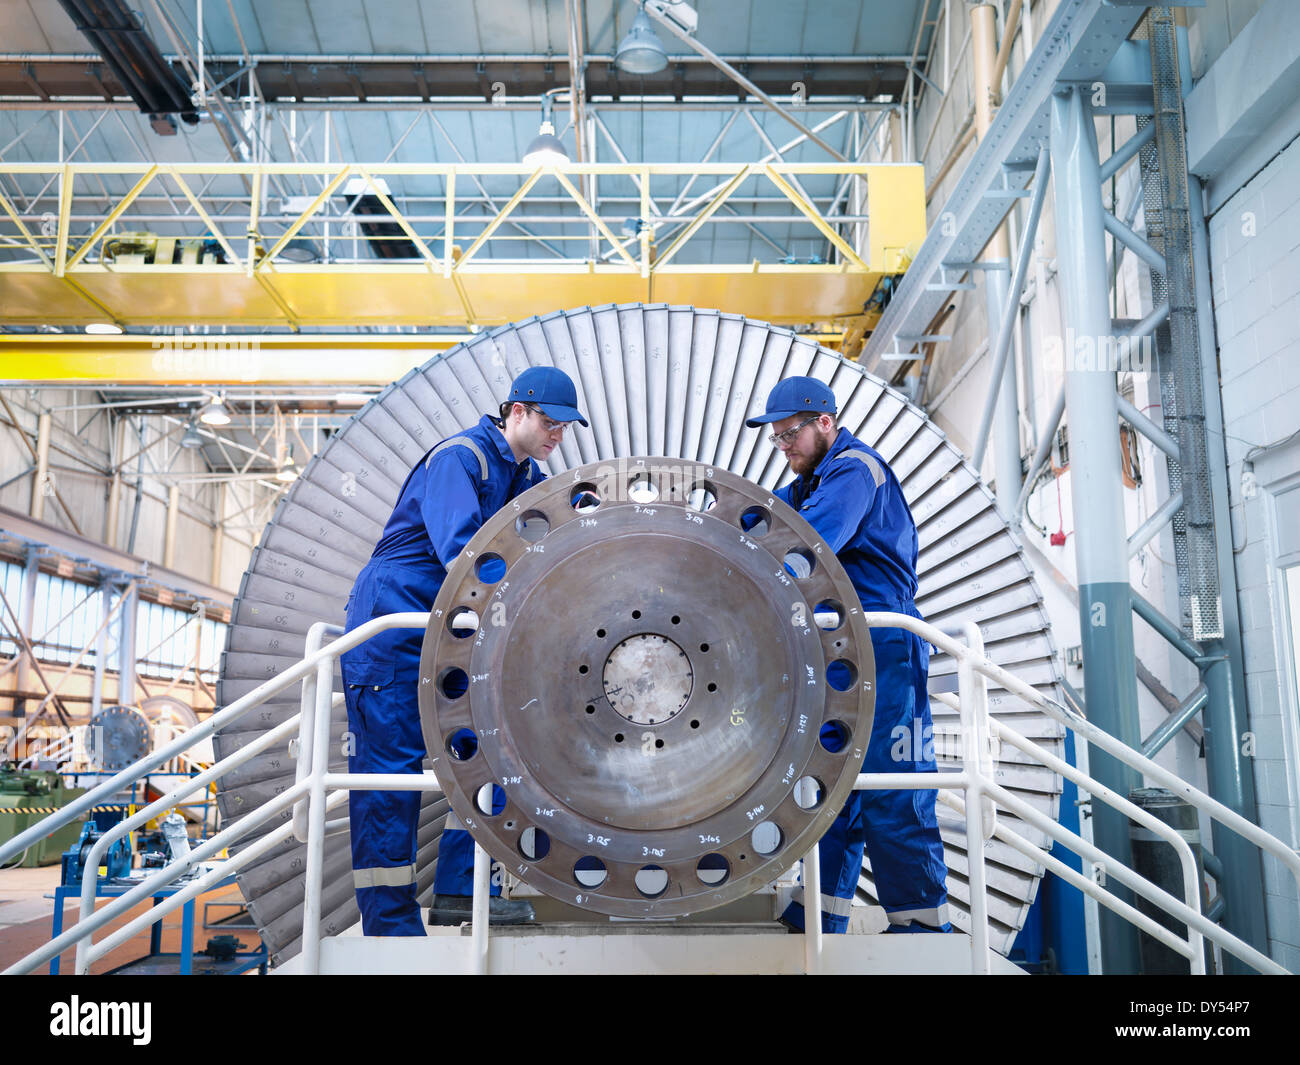 Engineers repairing steam turbine in workshop Stock Photo